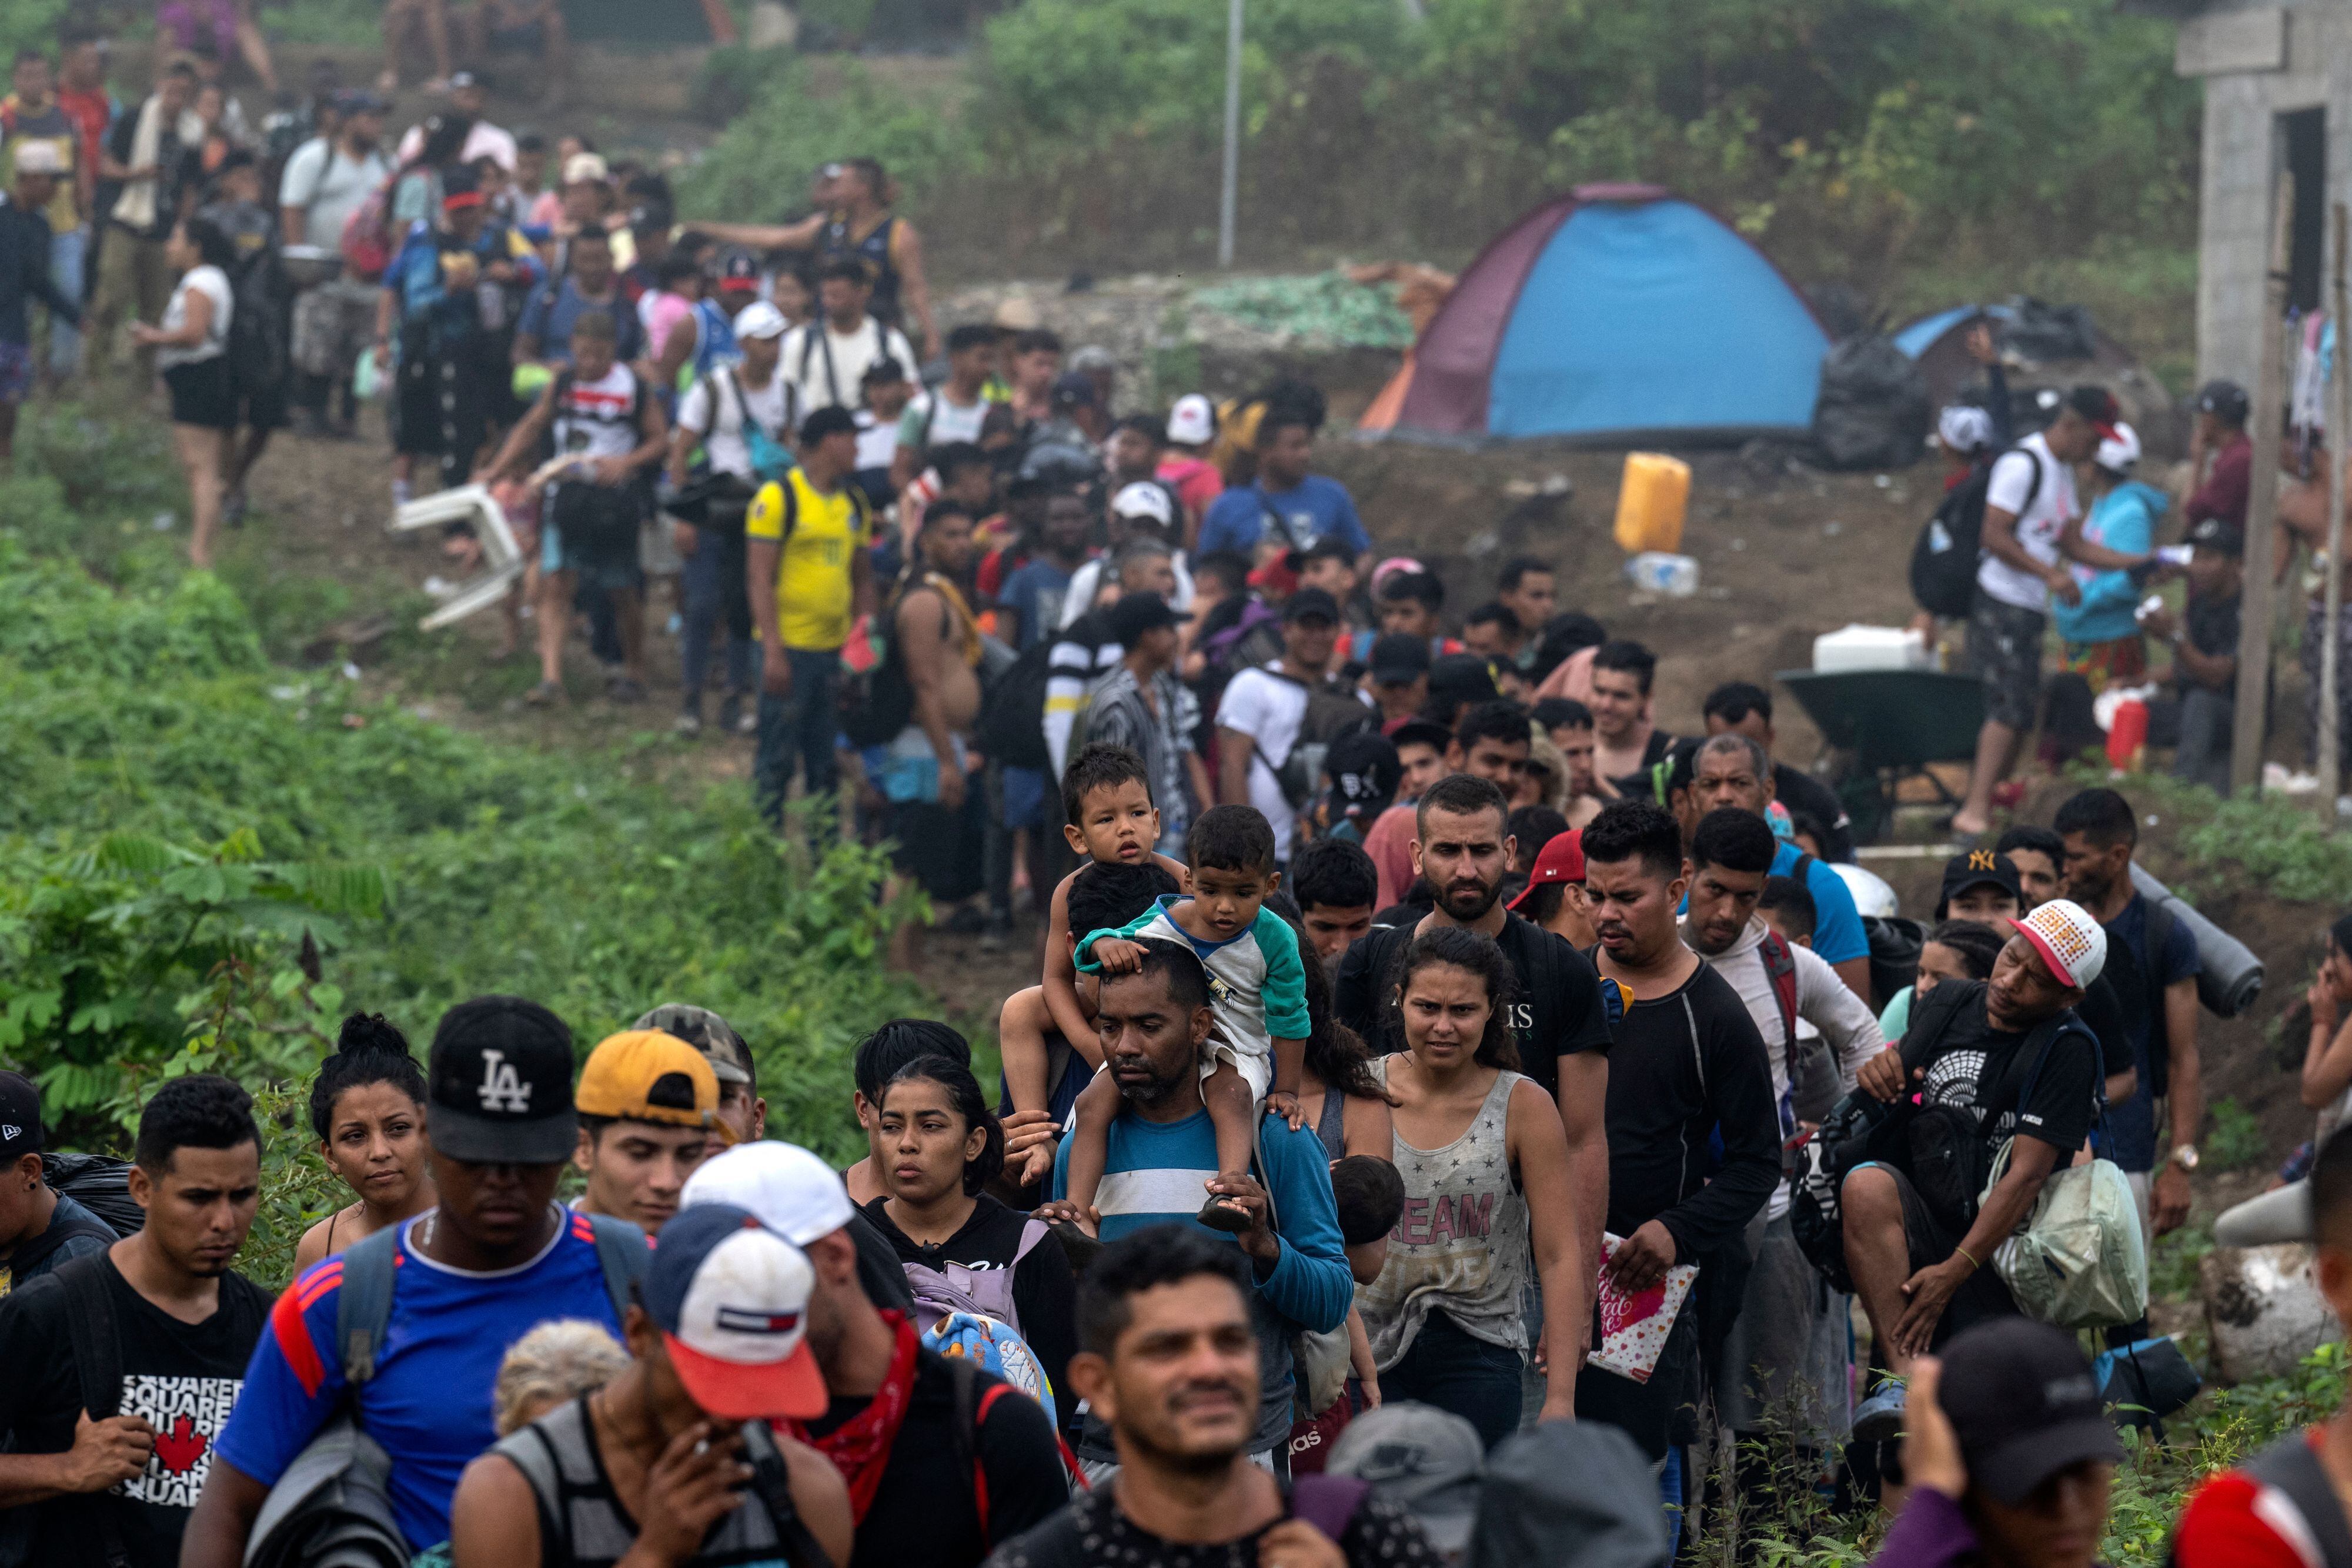 El constante flujo de migrantes por países como Colombia está aumentando la hambruna en América Latina. Foto: Luis ACOSTA/AFP